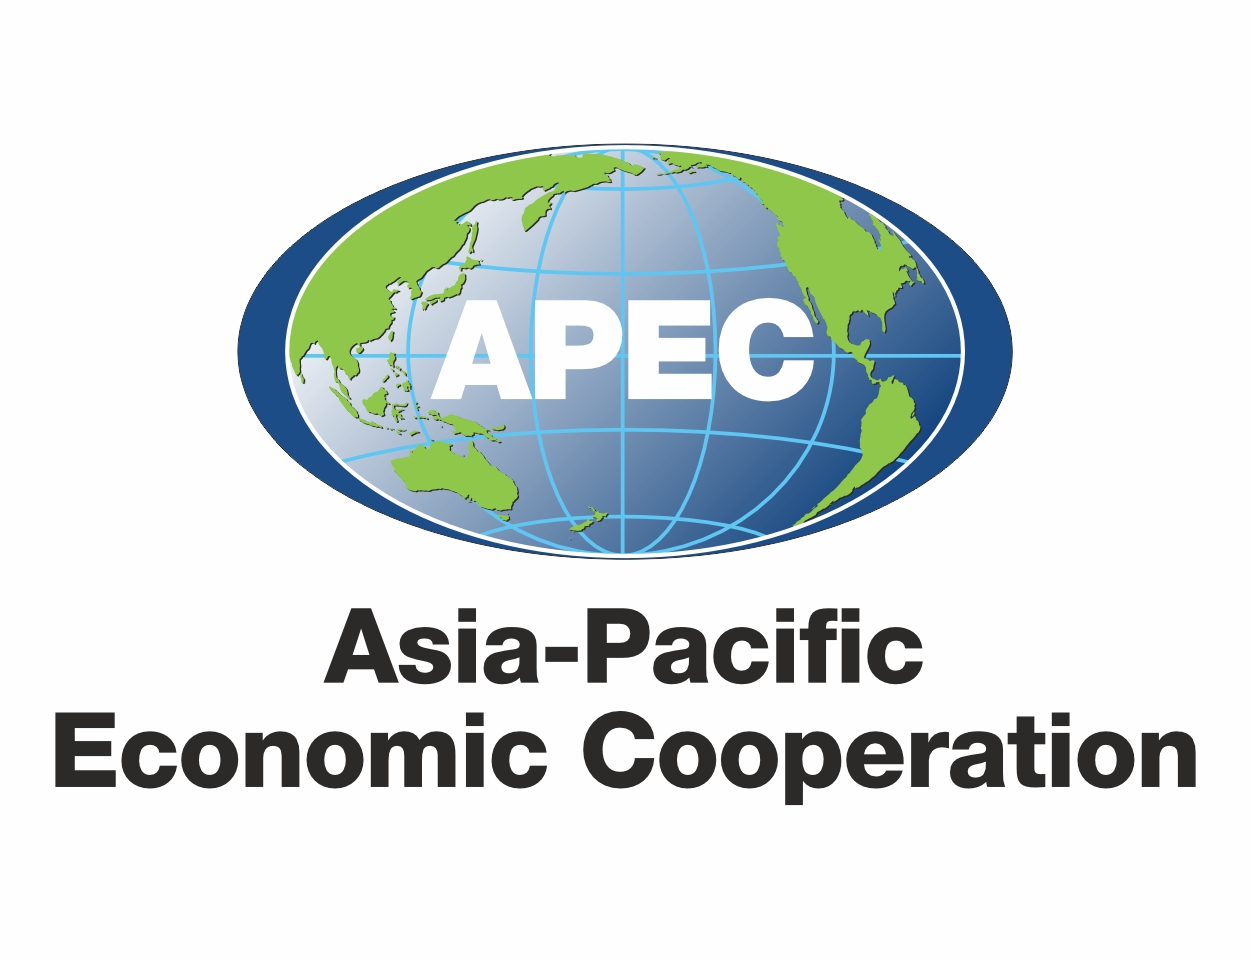 Asia-Pacific Economic Cooperation - APEC